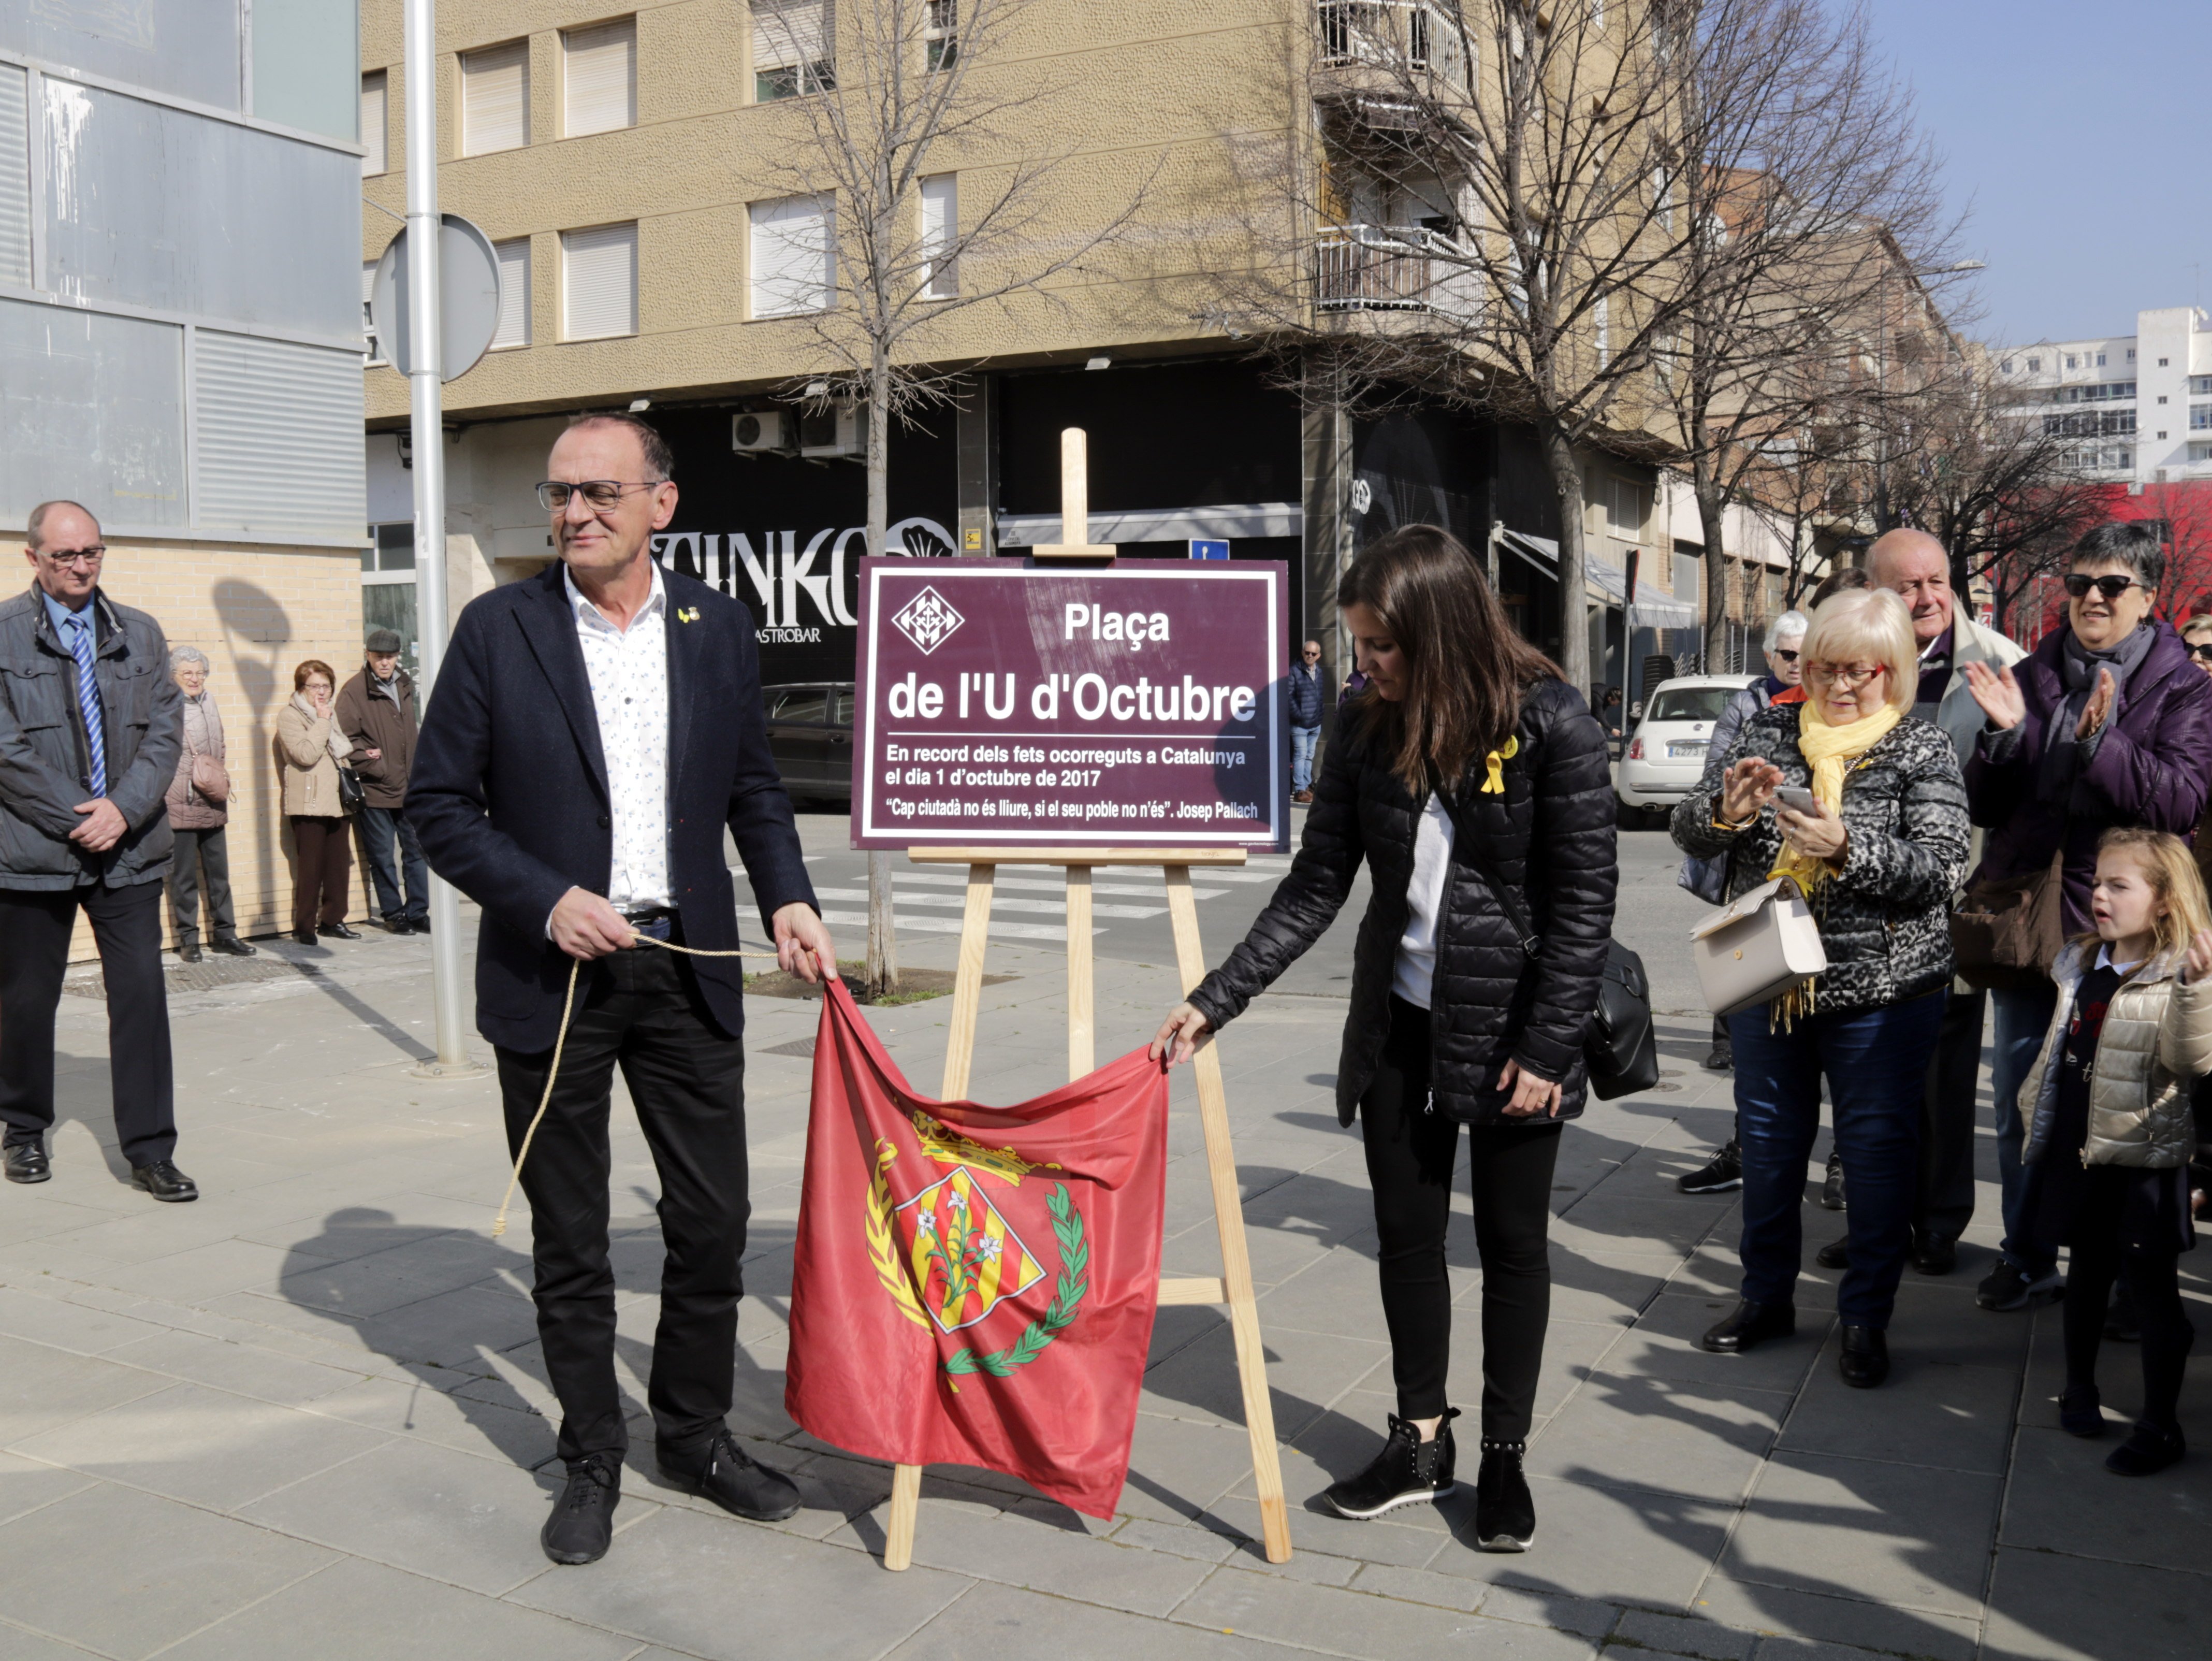 Lleida inaugura la plaça de l'U d'Octubre